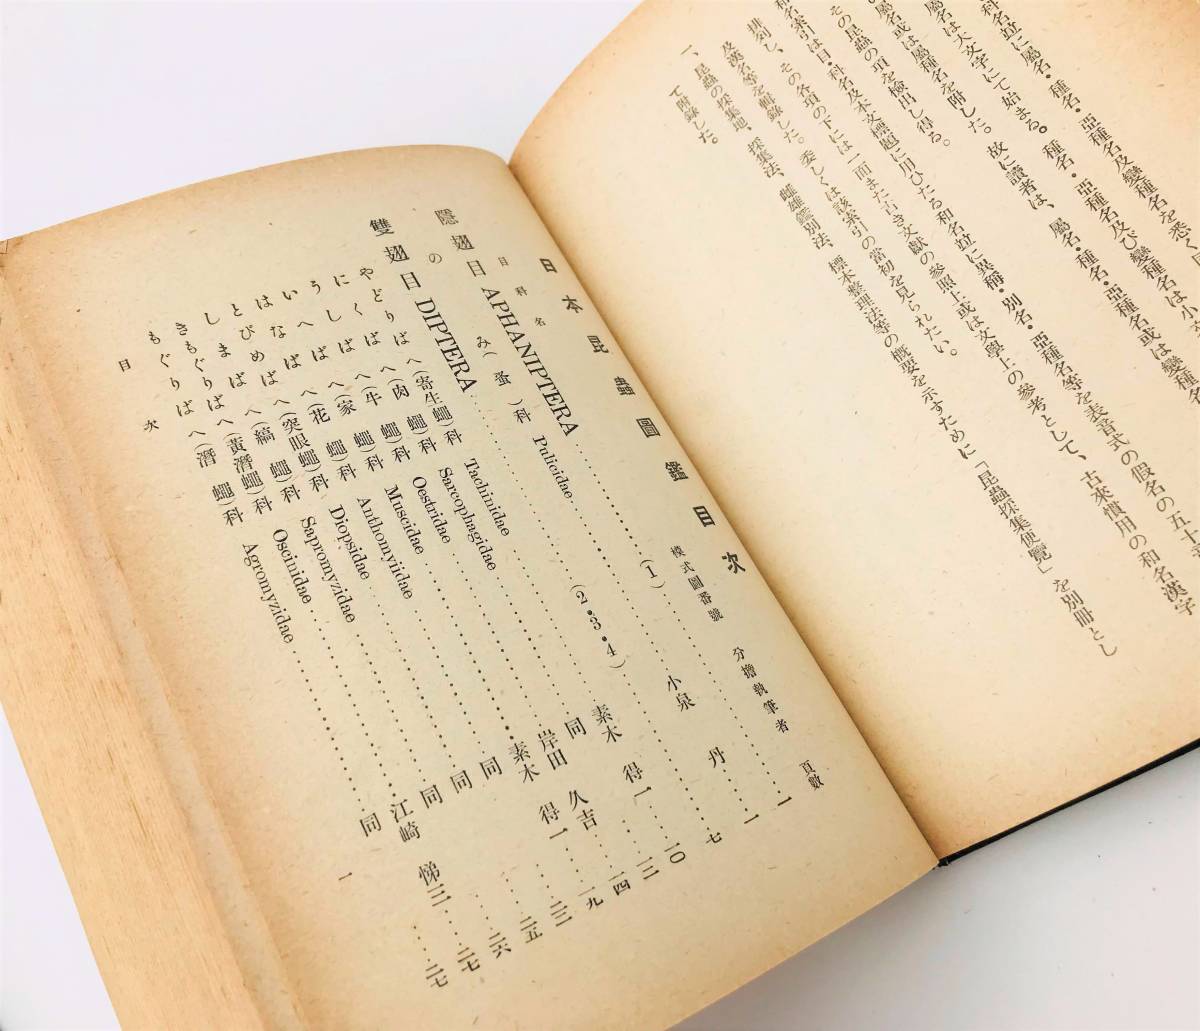 (R4-0335) Япония насекомое иллюстрированная книга .. Showa 7 год 6 месяц выпуск север . павильон внутри рисовое поле Kiyoshi .. Showa 10 шесть год повторный версия 